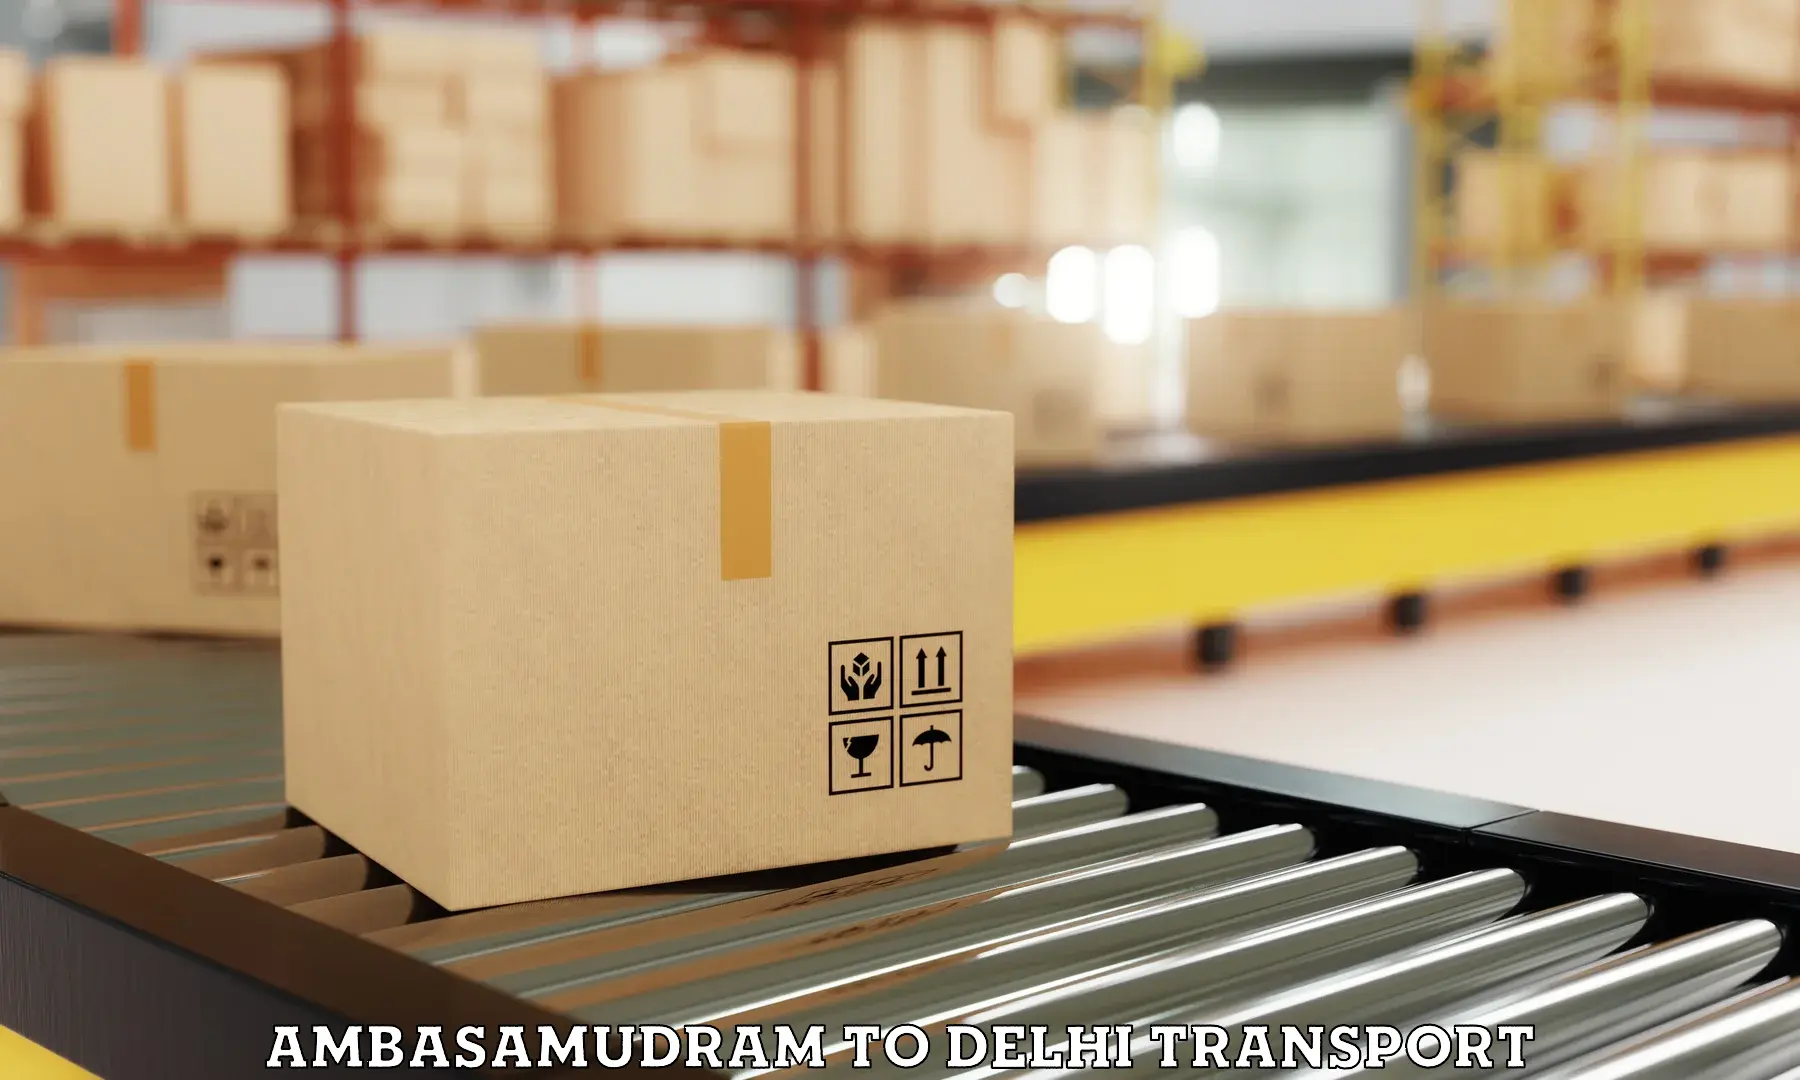 Shipping partner Ambasamudram to Delhi